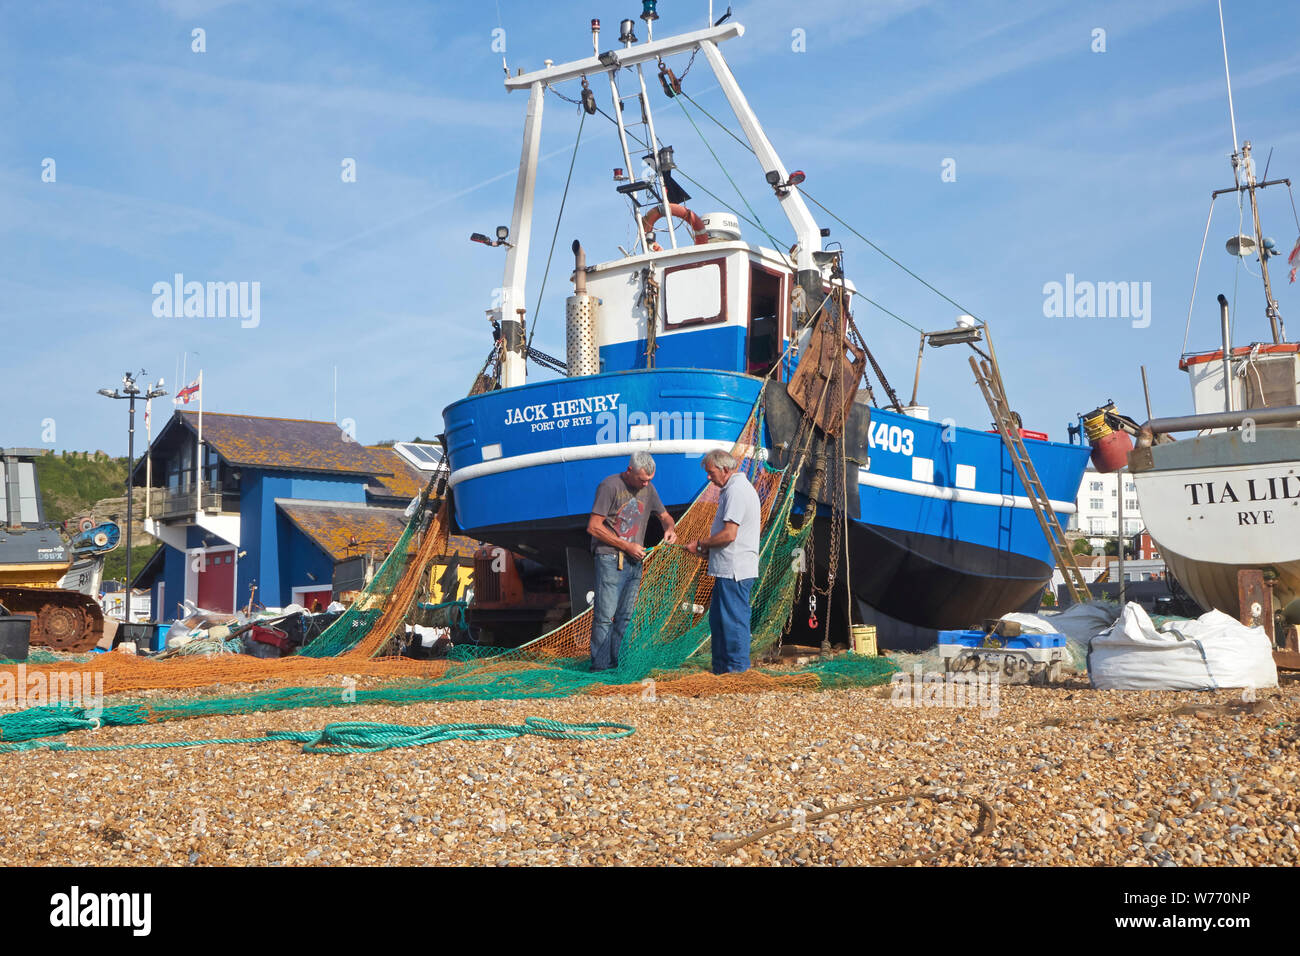 Filets de pêcheurs Hastings raccommodage sur la vieille ville de Stade, Rock-a-Nore, East Sussex, UK Banque D'Images